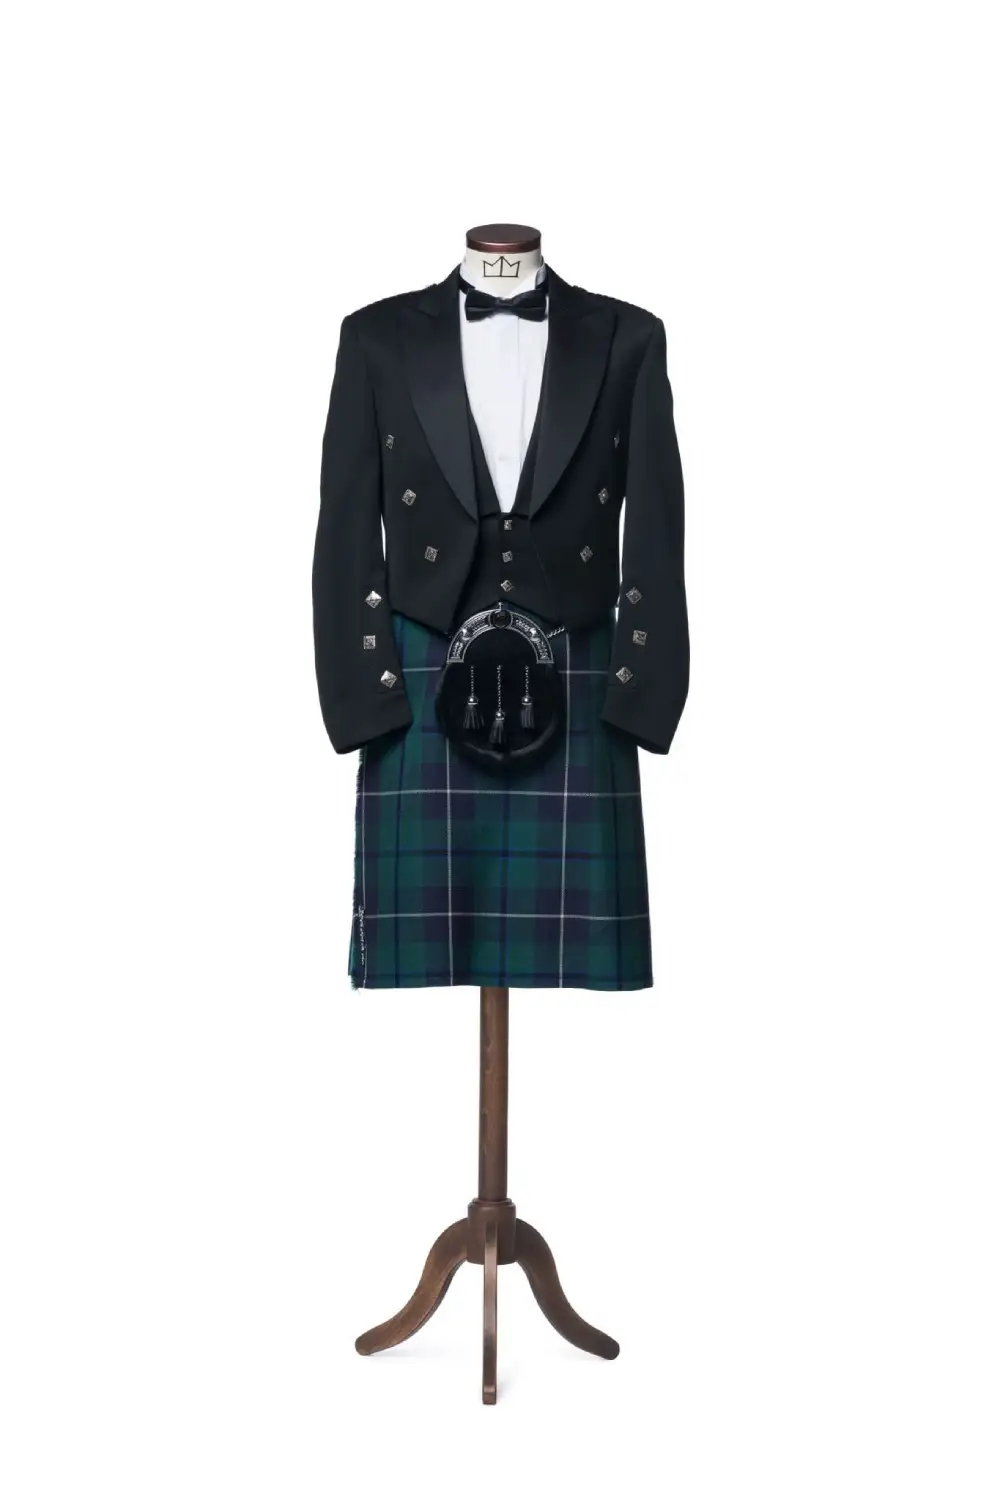 Un traje de falda escocesa del Príncipe Charlie colgado en una percha.